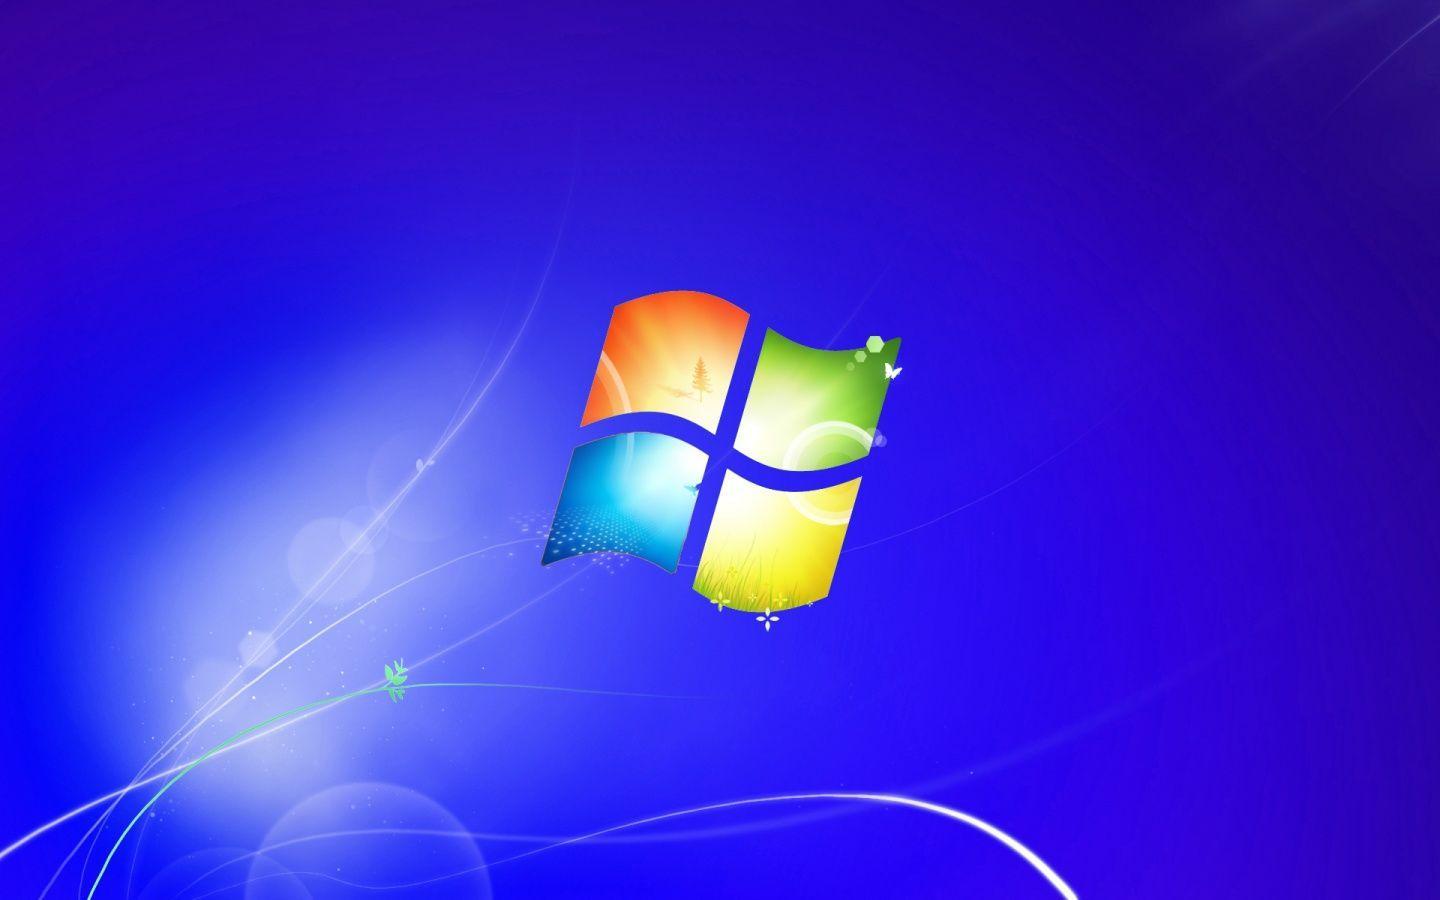 Hình nền Windows 7 HD với độ phân giải cao sẽ khiến cho hình ảnh của bạn trở nên sắc nét và tuyệt đẹp. Khám phá ngay những hình nền HD chất lượng cao và tùy chỉnh màn hình desktop của bạn.